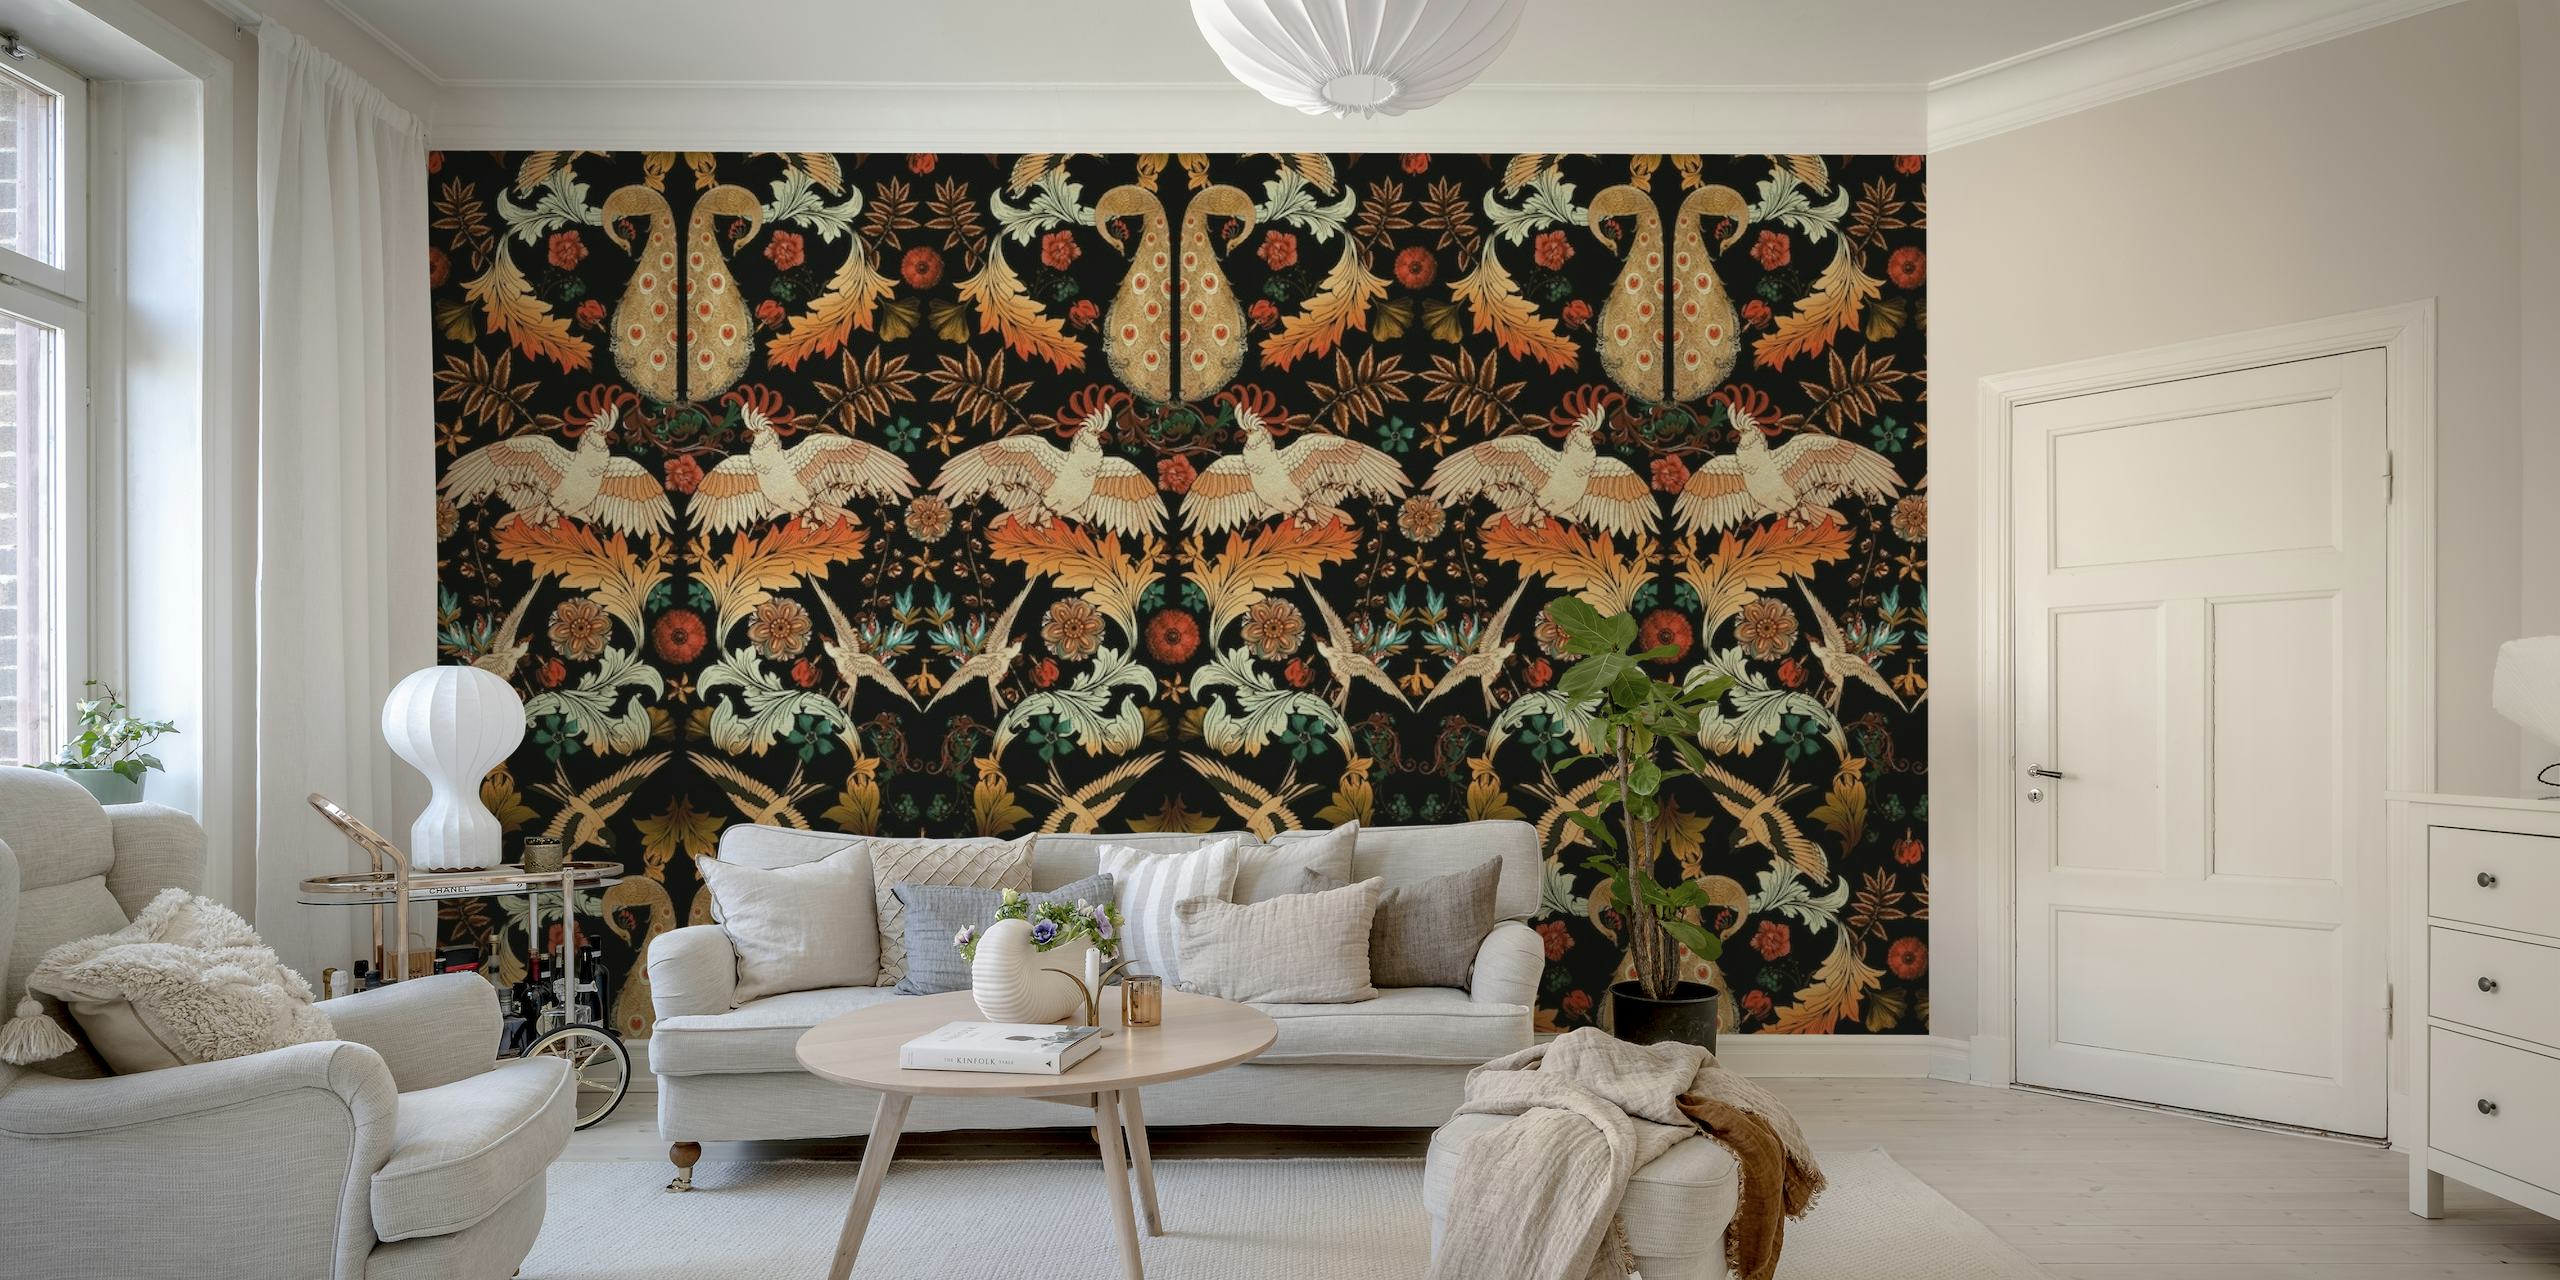 Fotomural vinílico de parede com padrão floral em estilo vitoriano em cores escuras e ricas.